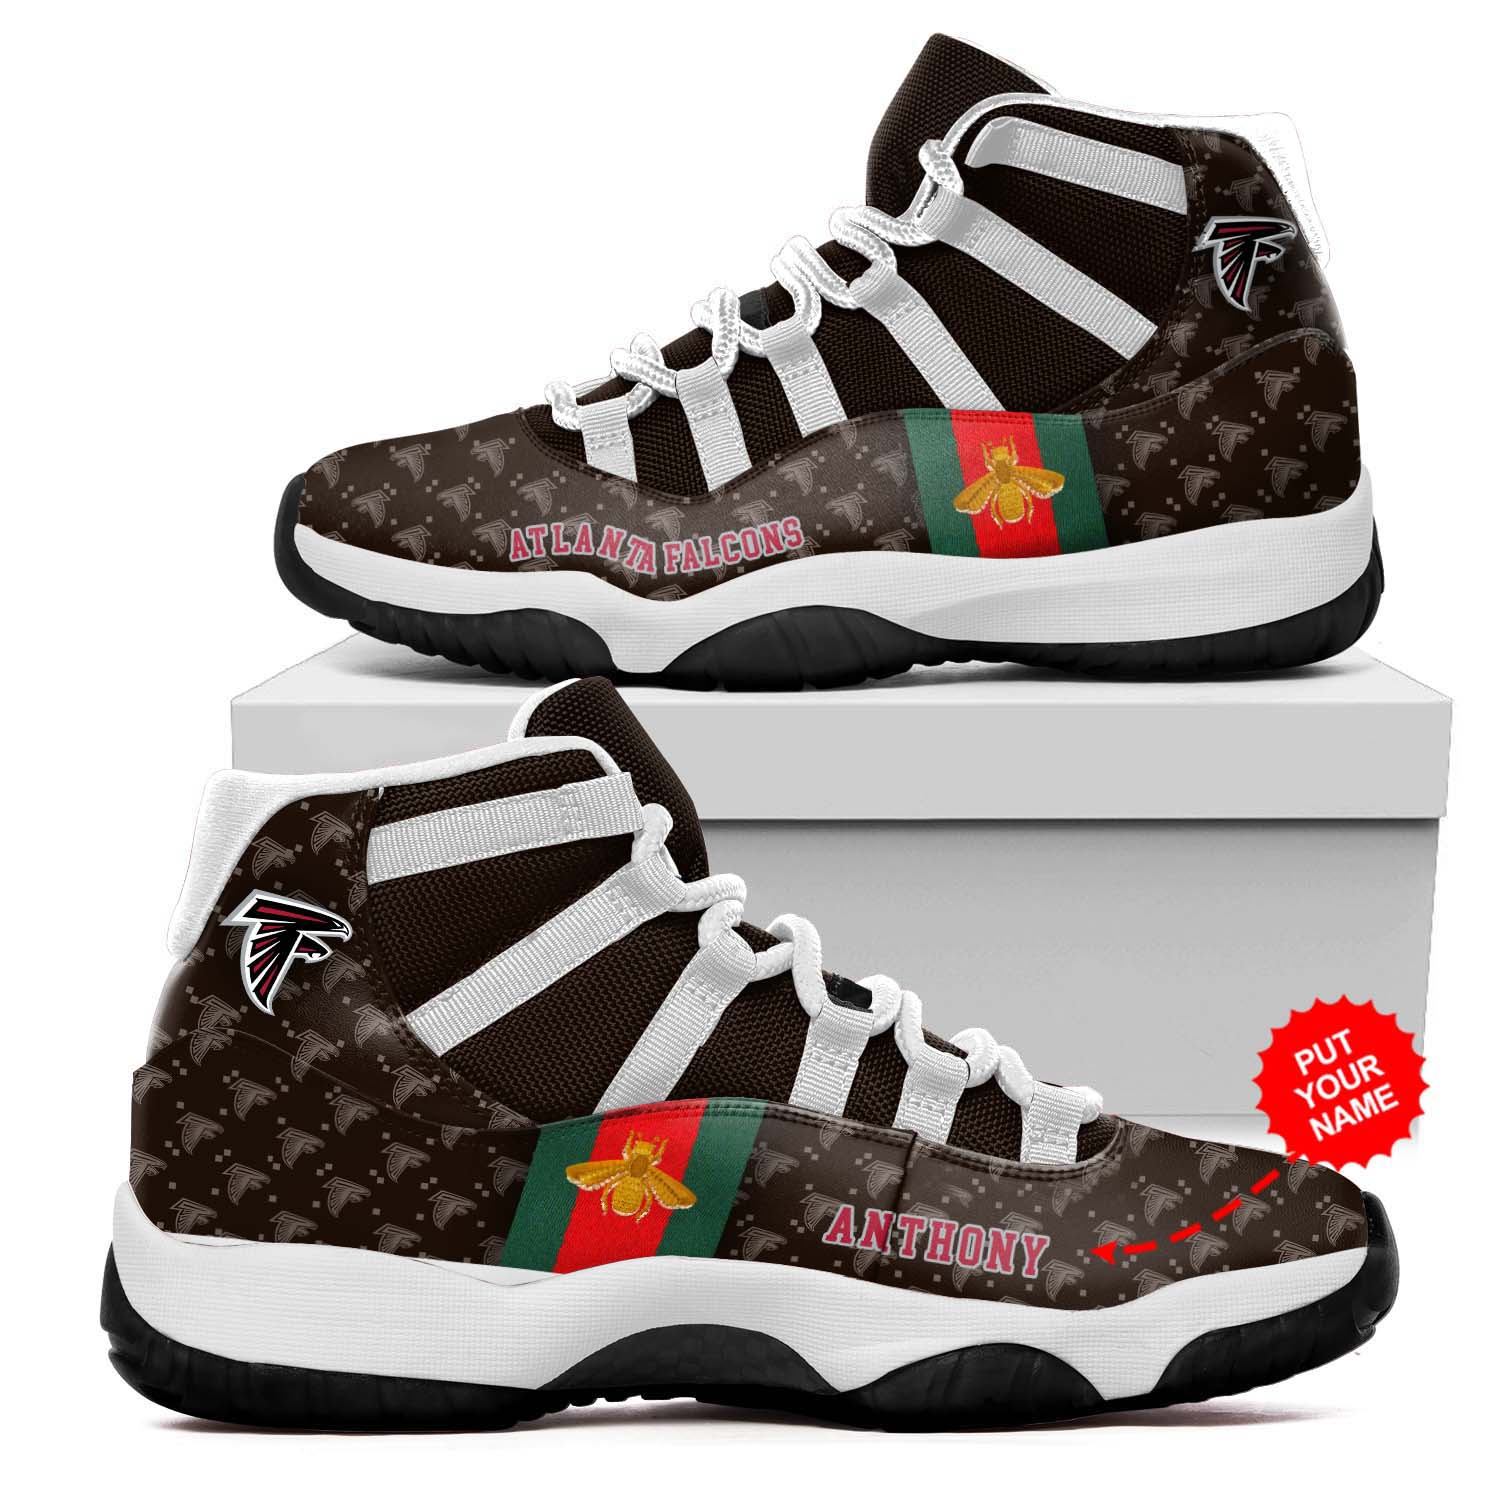 Atlanta Falcons NFL Gucci Air Jordan 11 Shoes